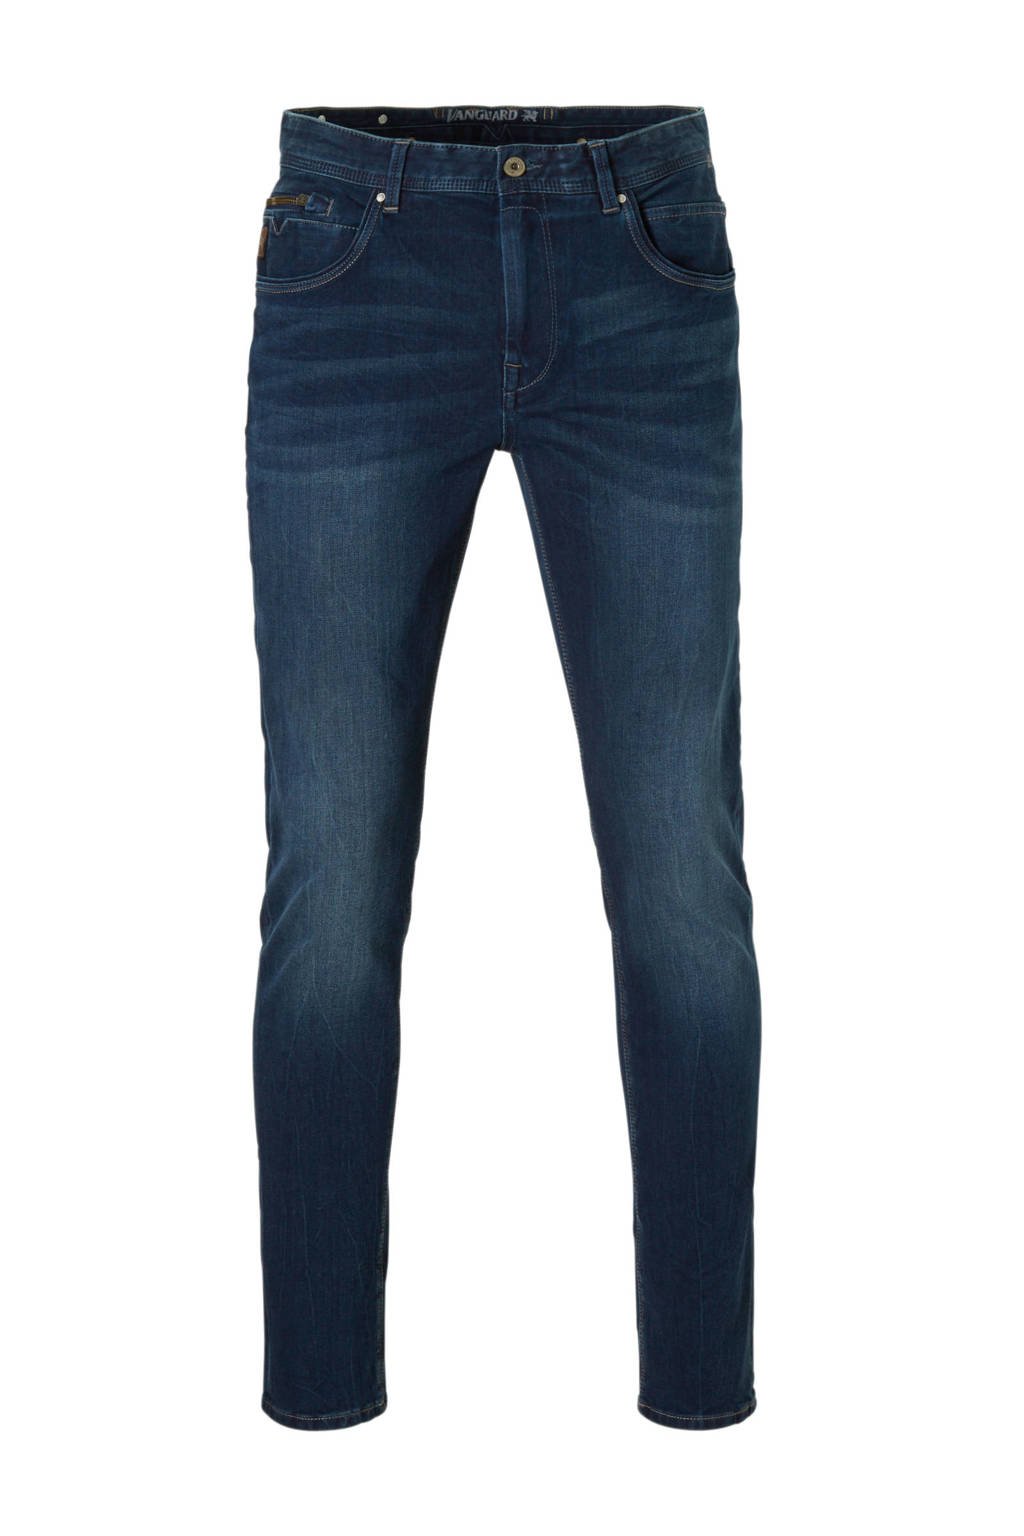 Ga door koffie Robijn Vanguard slim fit jeans V850 | wehkamp